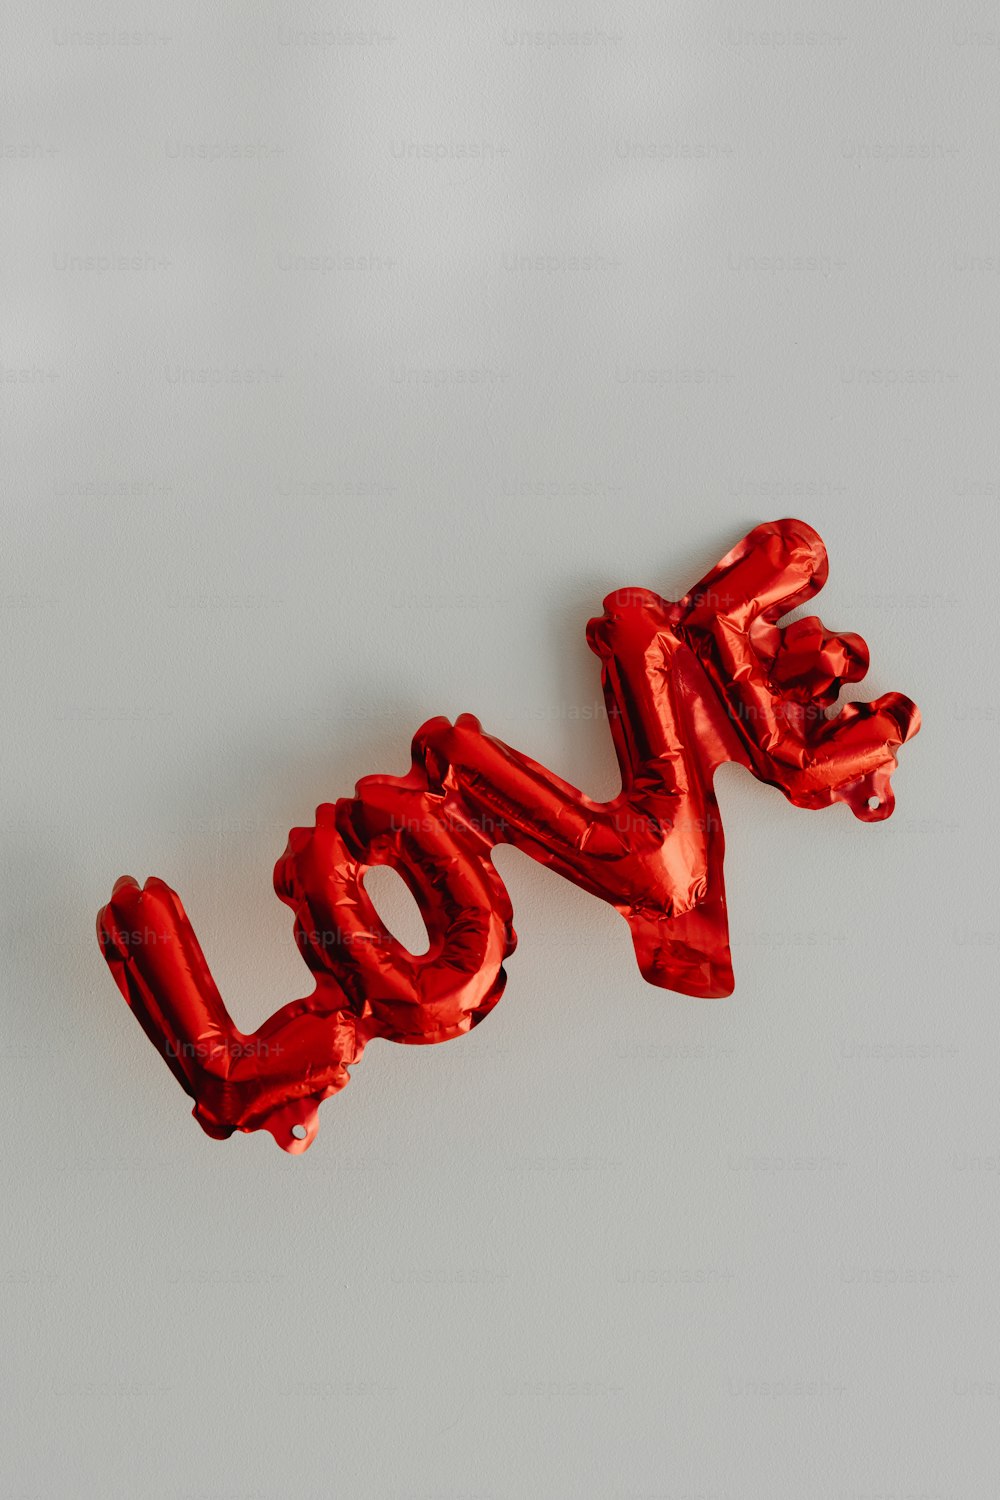 La parola amore scritta dai palloncini di lamina rossa